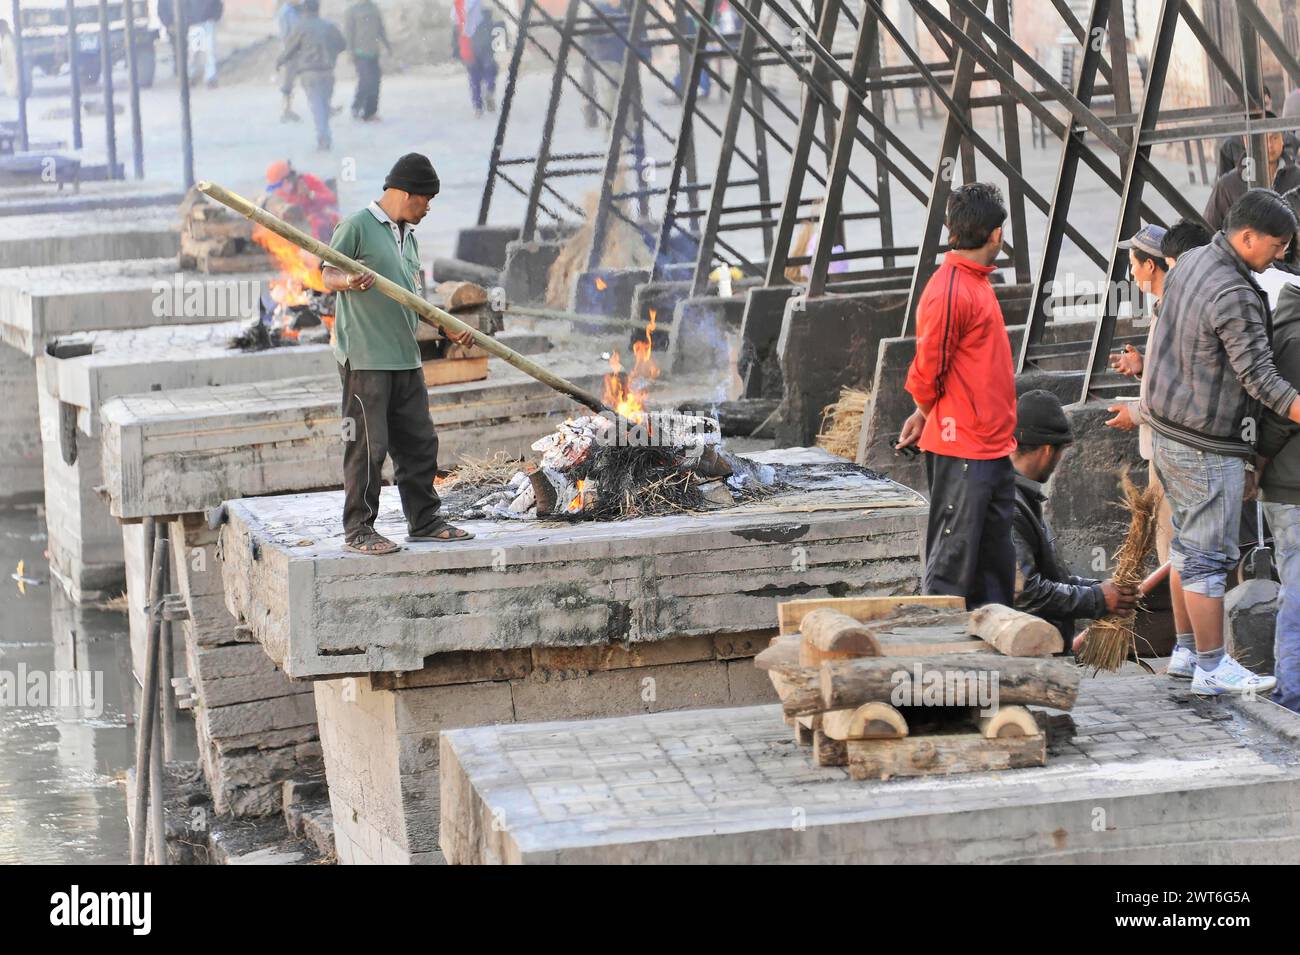 Rituale che brucia con gente in piedi intorno a un incendio su piattaforme di cemento, la valle di Kathmandu. Kathmandu, Nepal Foto Stock